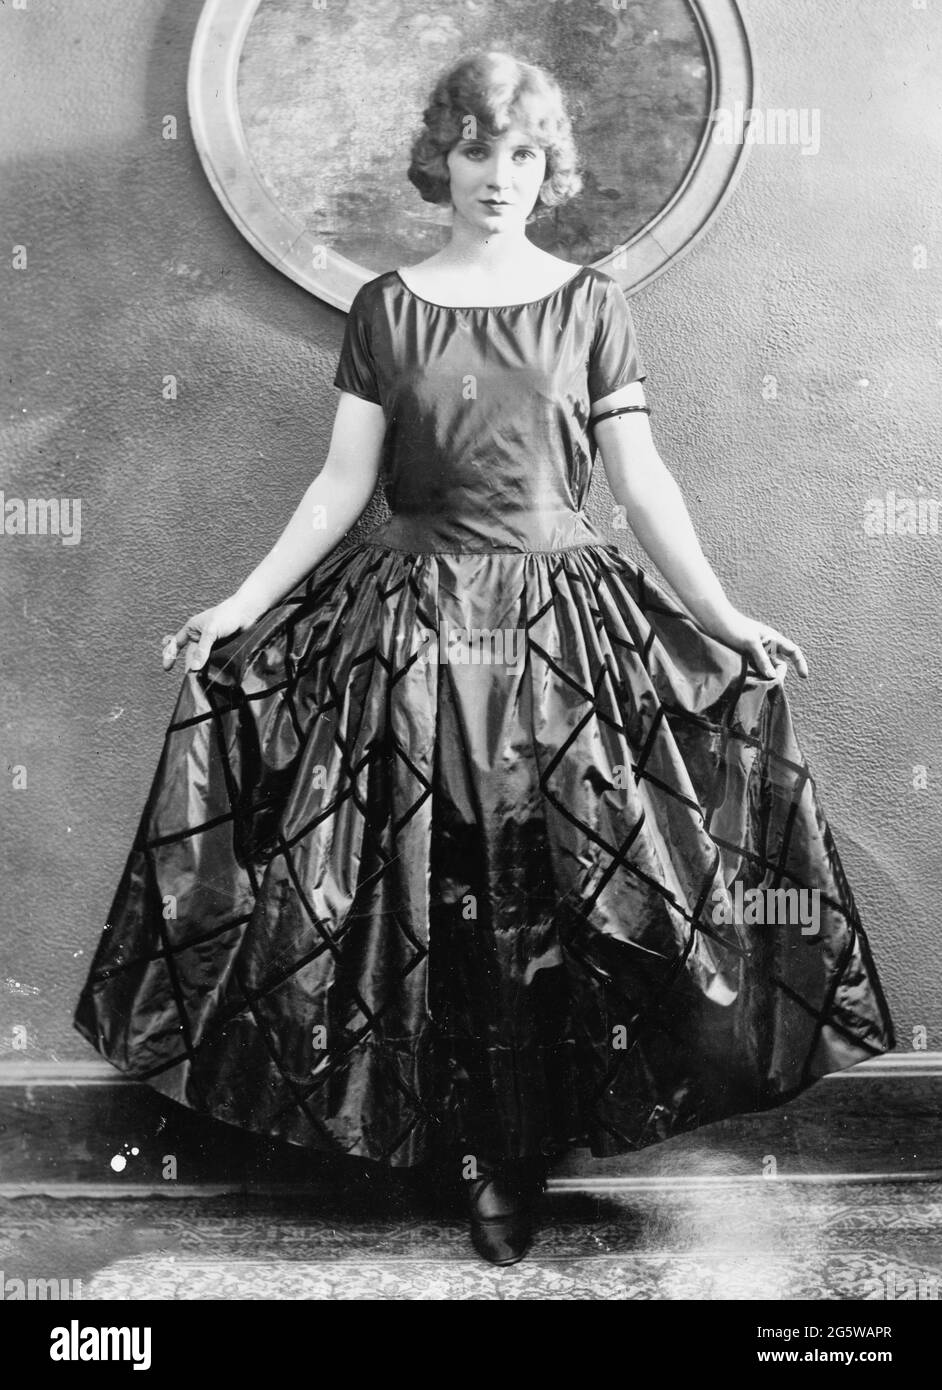 Mary Minter, brauner Taft, braunes Samtband - Foto zeigt die amerikanische Schauspielerin Mary Miles Minter (1902-1984), die geborene Juliet Reilly Stockfoto